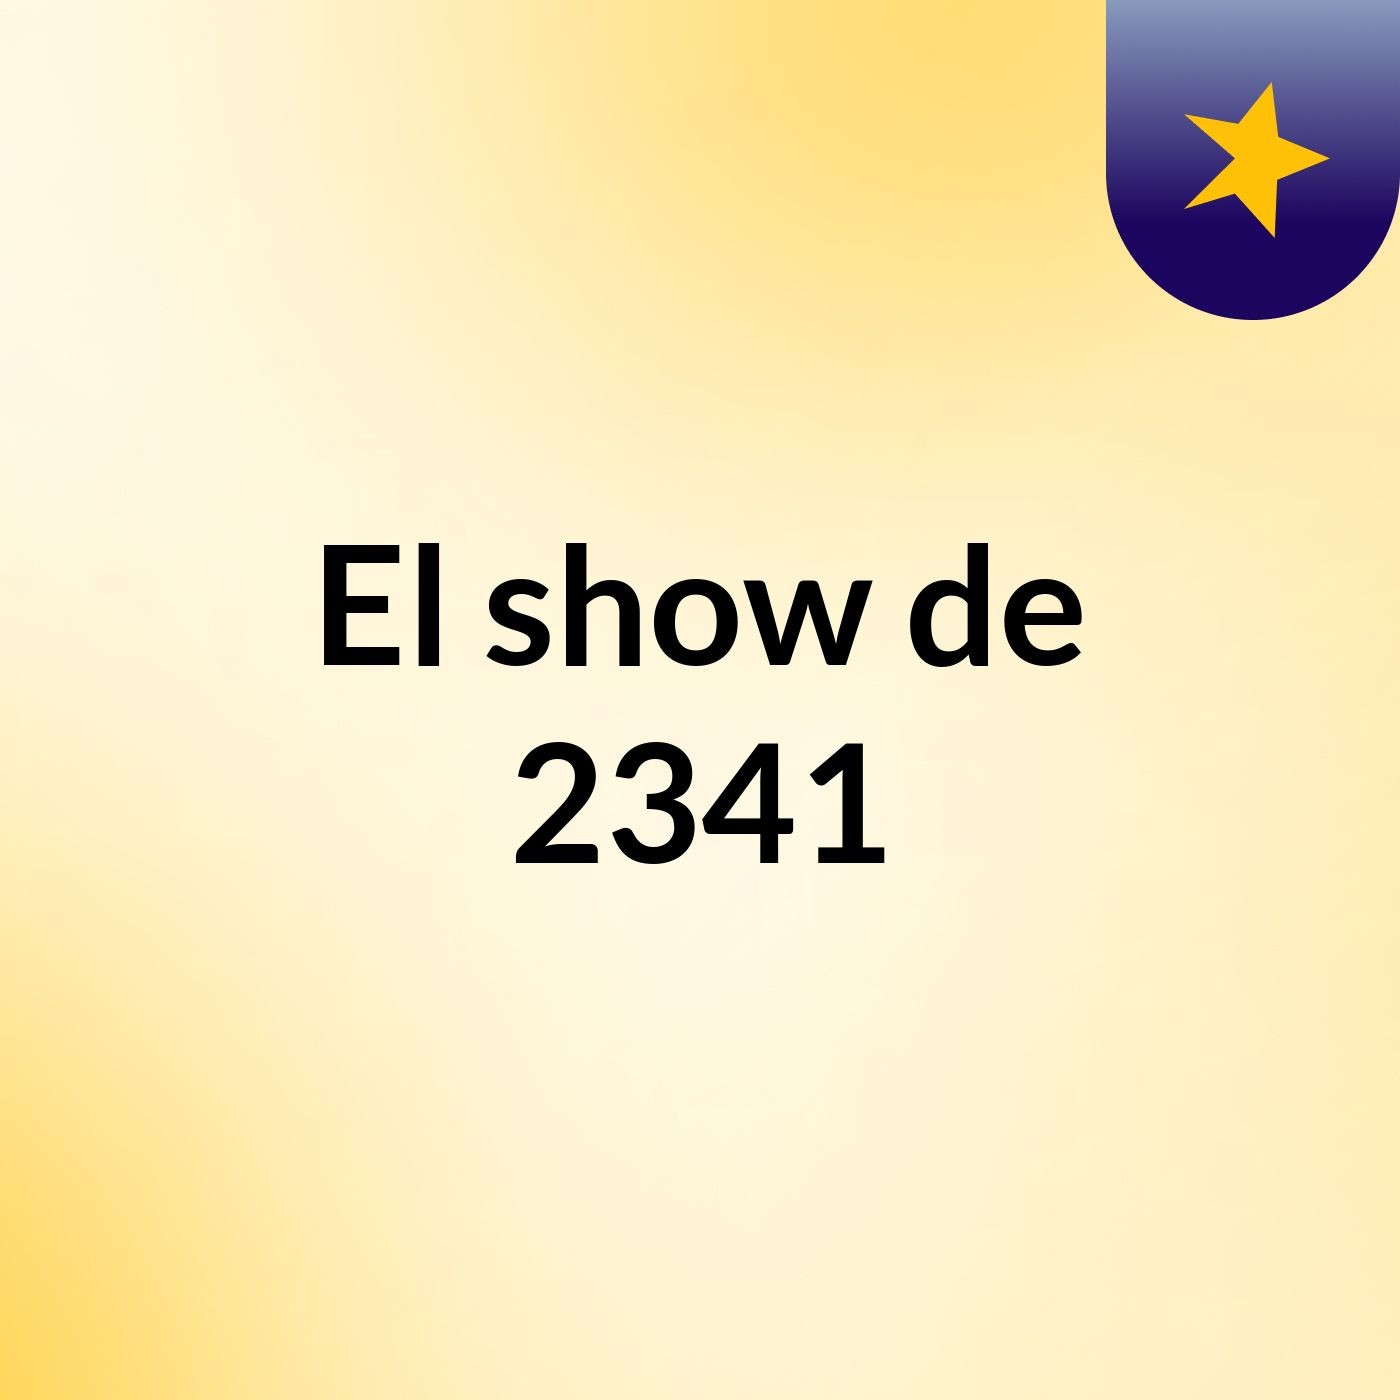 El show de 2341